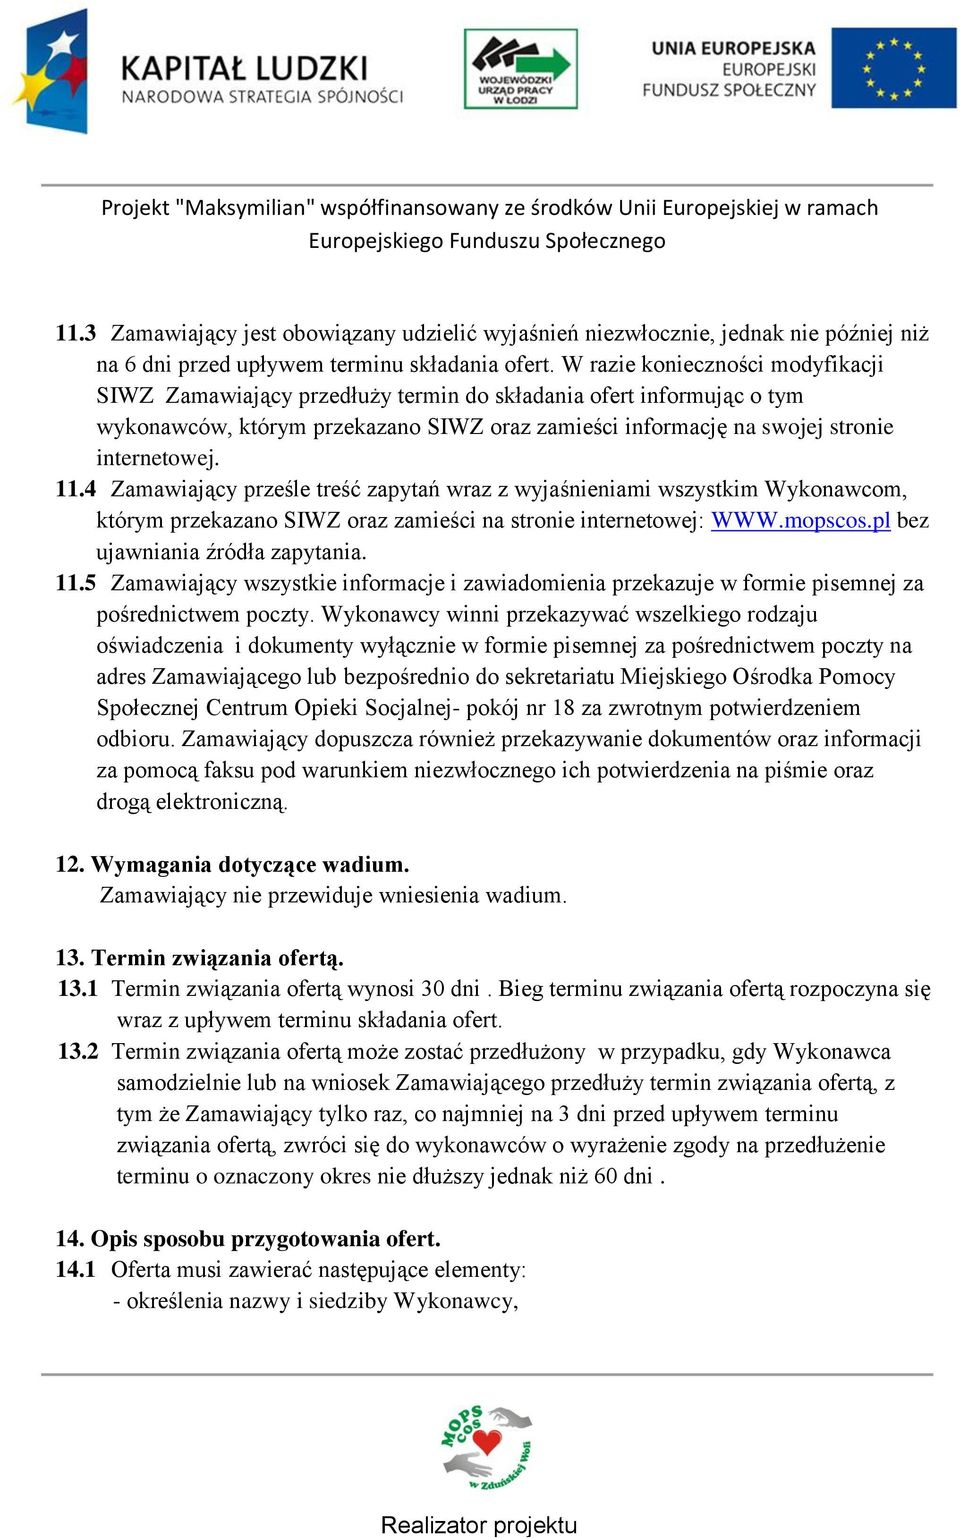 4 Zamawiający prześle treść zapytań wraz z wyjaśnieniami wszystkim Wykonawcom, którym przekazano SIWZ oraz zamieści na stronie internetowej: WWW.mopscos.pl bez ujawniania źródła zapytania. 11.